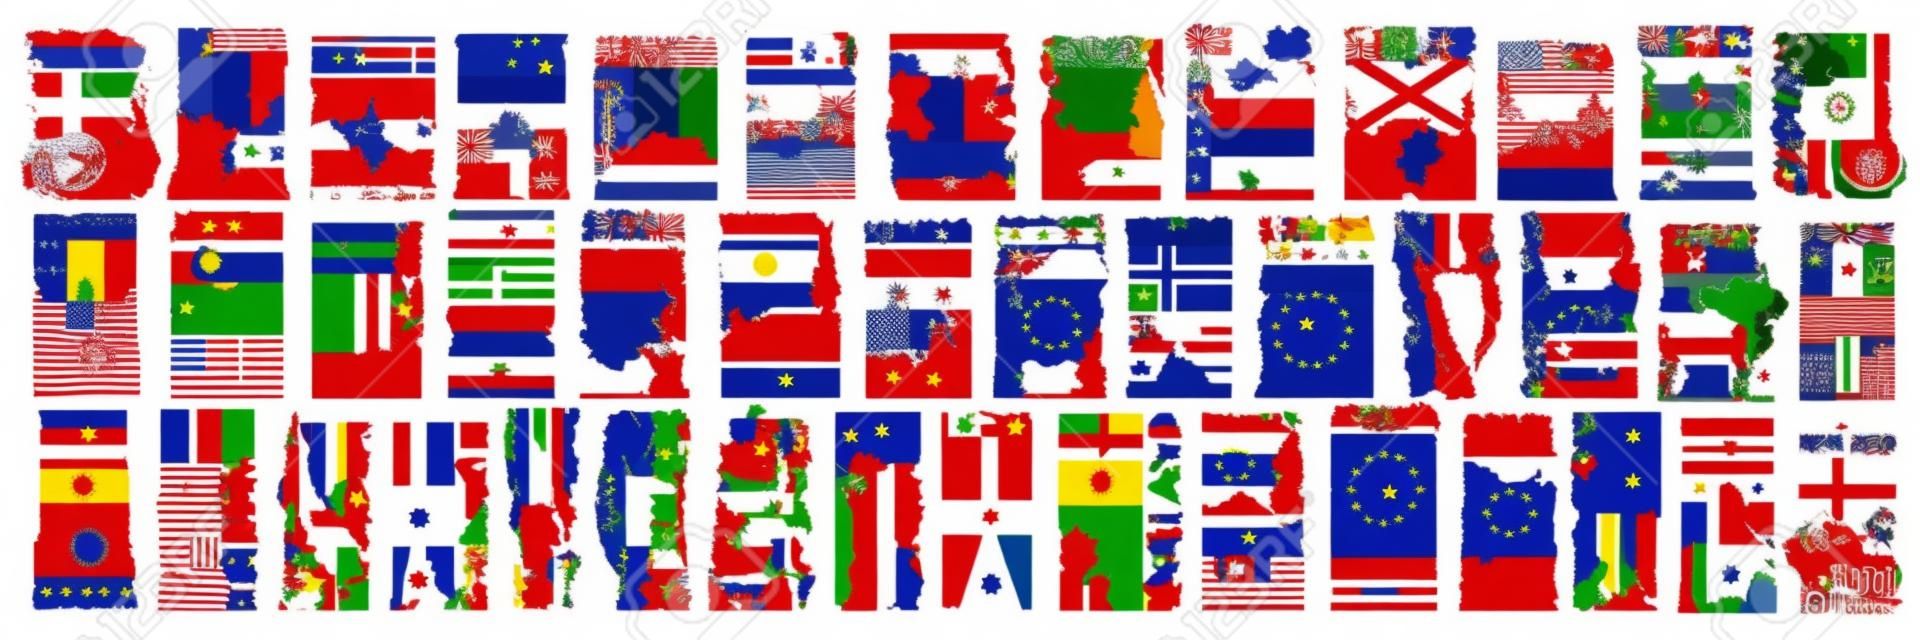 Ensemble d'images vectorielles de pays européens avec des drapeaux et des symboles, 43 étiquettes verticales isolées avec des drapeaux nationaux et une police de pinceau pour différents mots, des autocollants de conception d'art pour la fête de l'indépendance européenne.